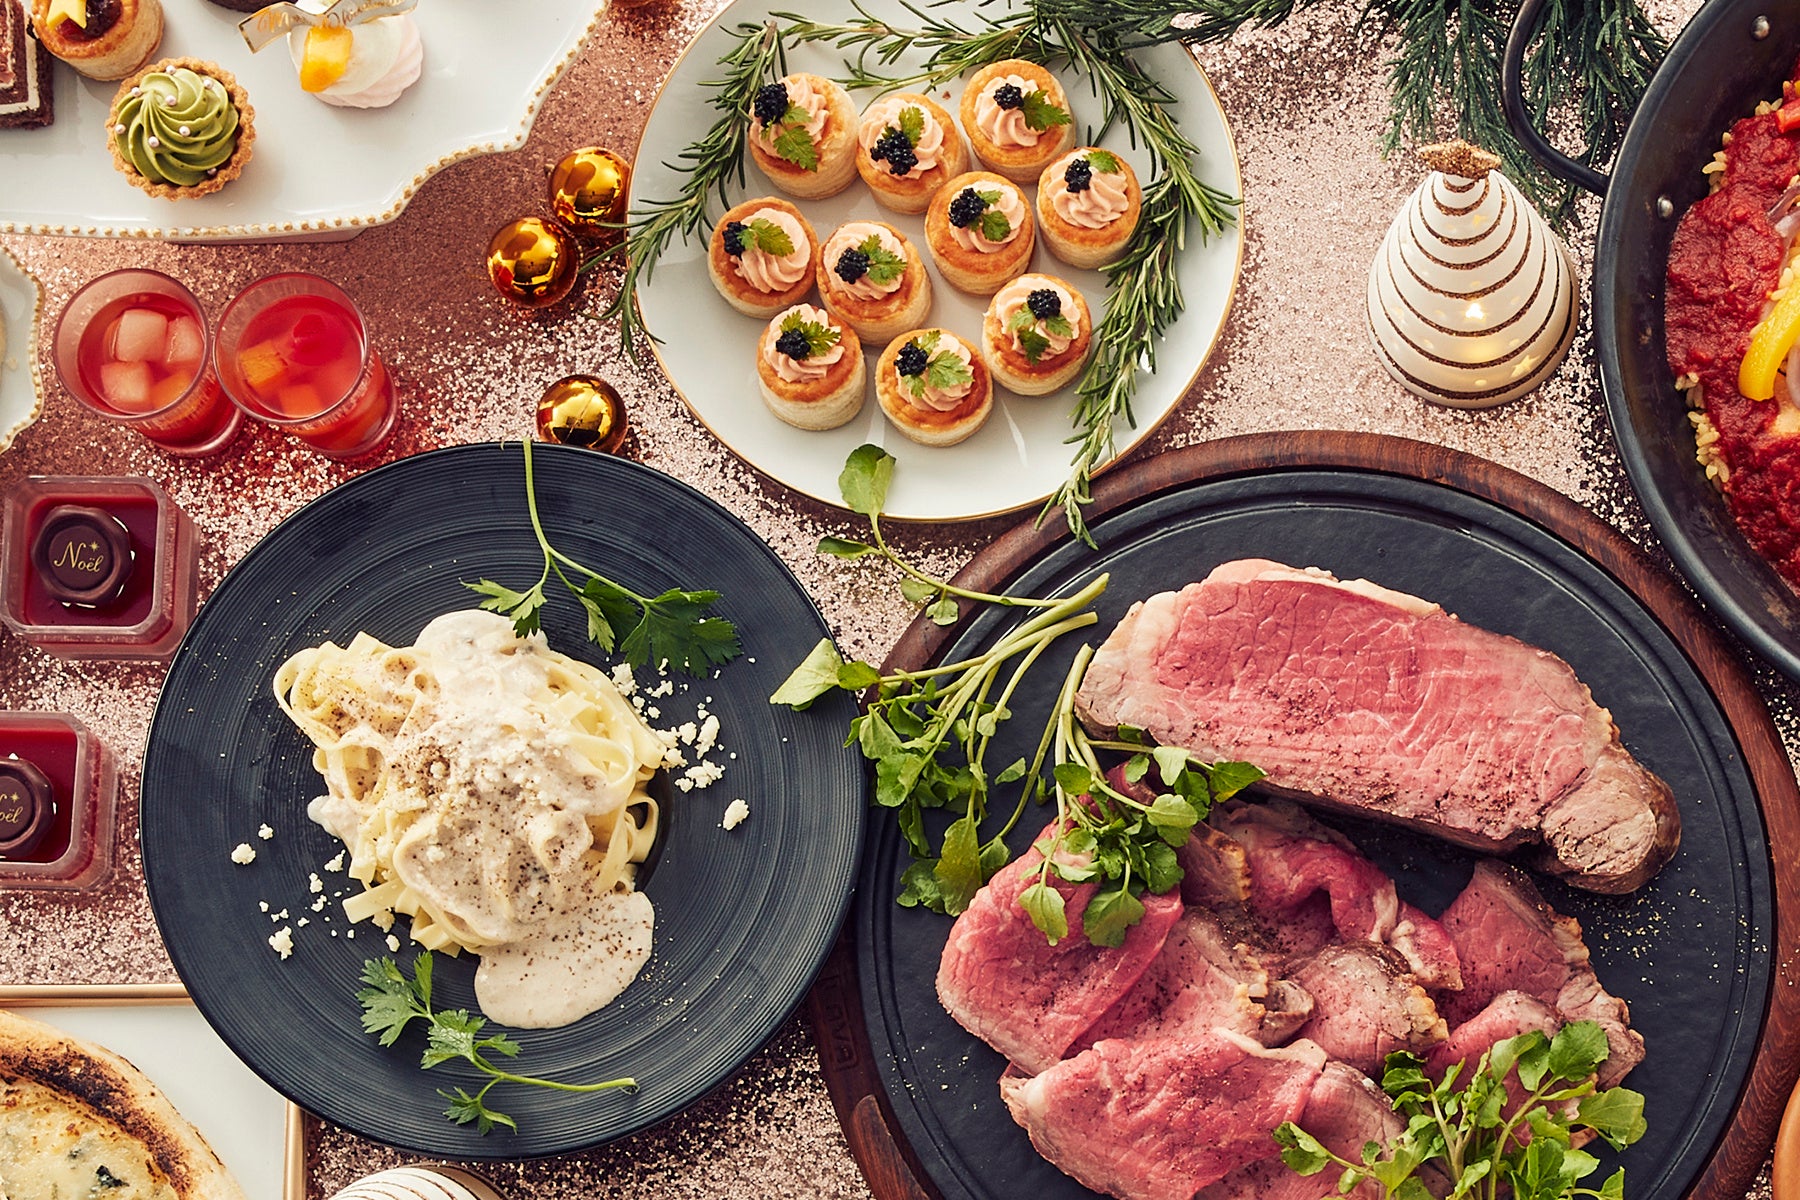 多彩なメニューを楽しみながら、とびっきりのクリスマスディナーのひとときを。 （左から）生パスタ ポルチーニクリームソース、サーモンパイ、ローストビーフ